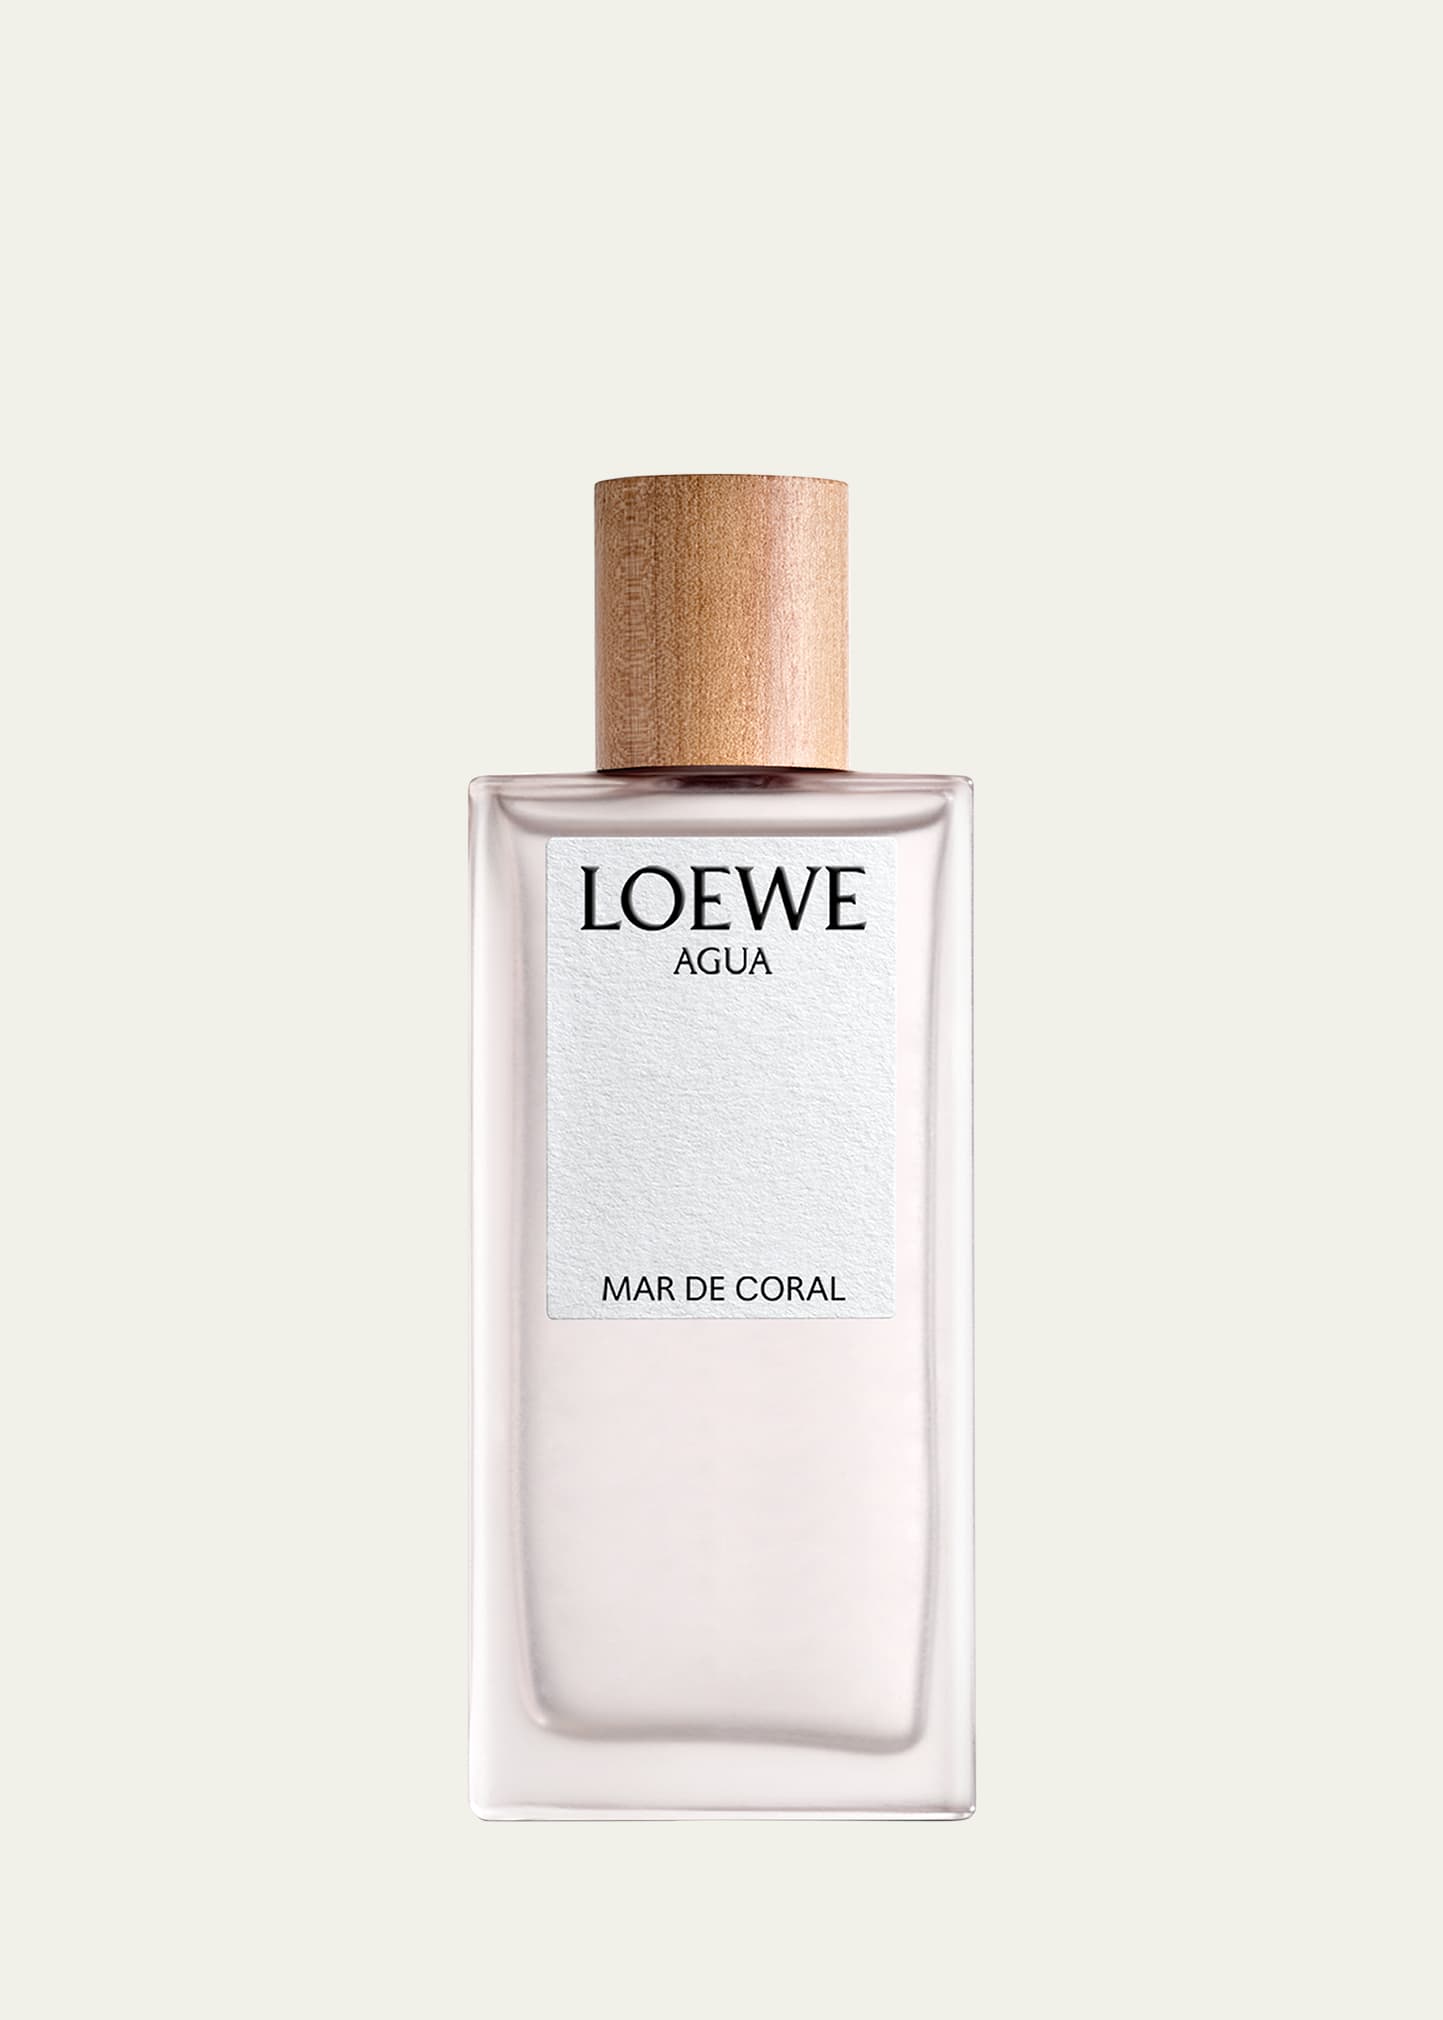 Loewe 3.4 oz. Agua Mar de Coral Eau de Toilette